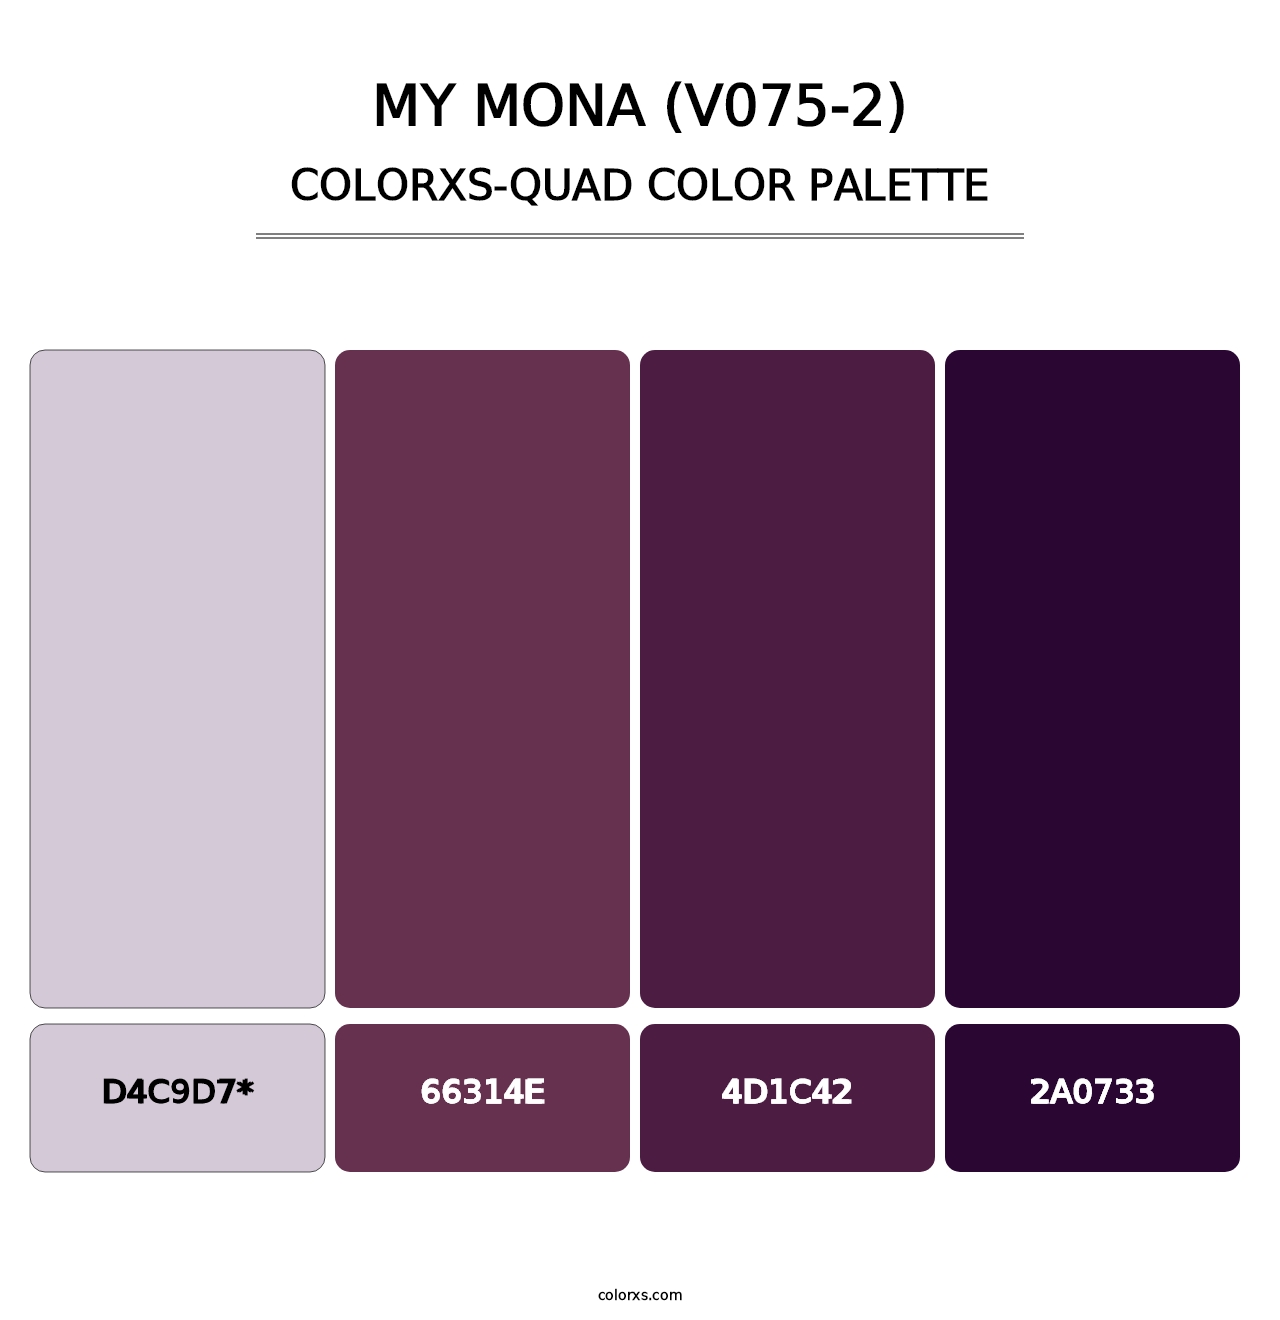 My Mona (V075-2) - Colorxs Quad Palette